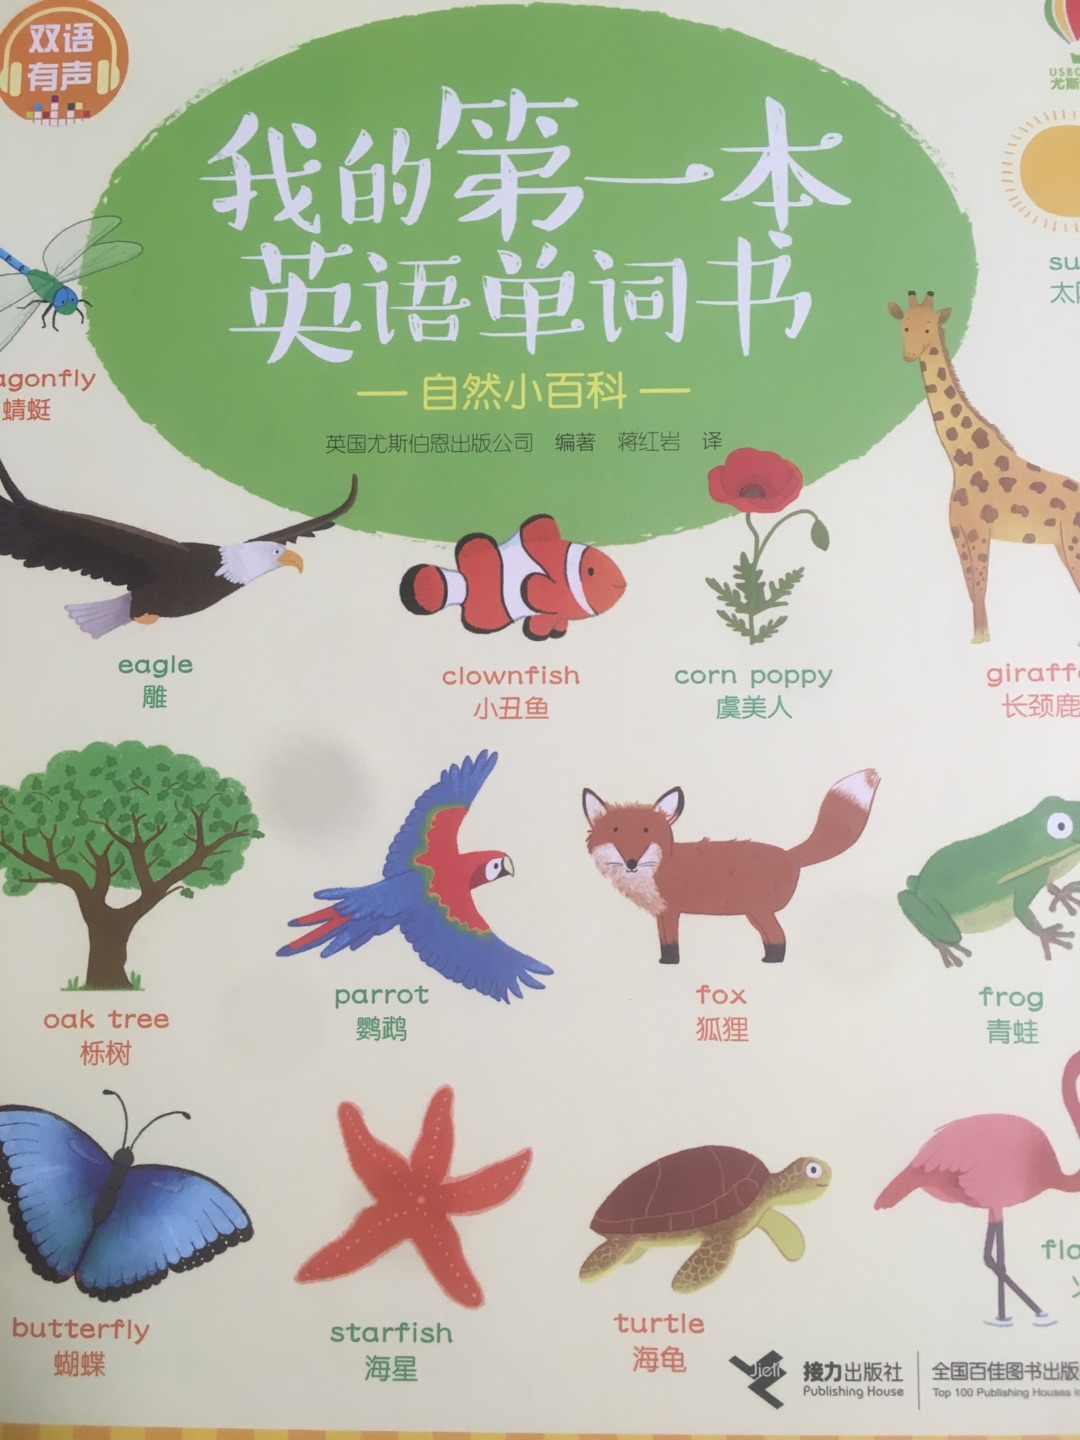 给小孩认东西用的，先学中文也挺好，好多英文单词大人也不认识，一起学习，图画风格挺好，希望孩子喜欢